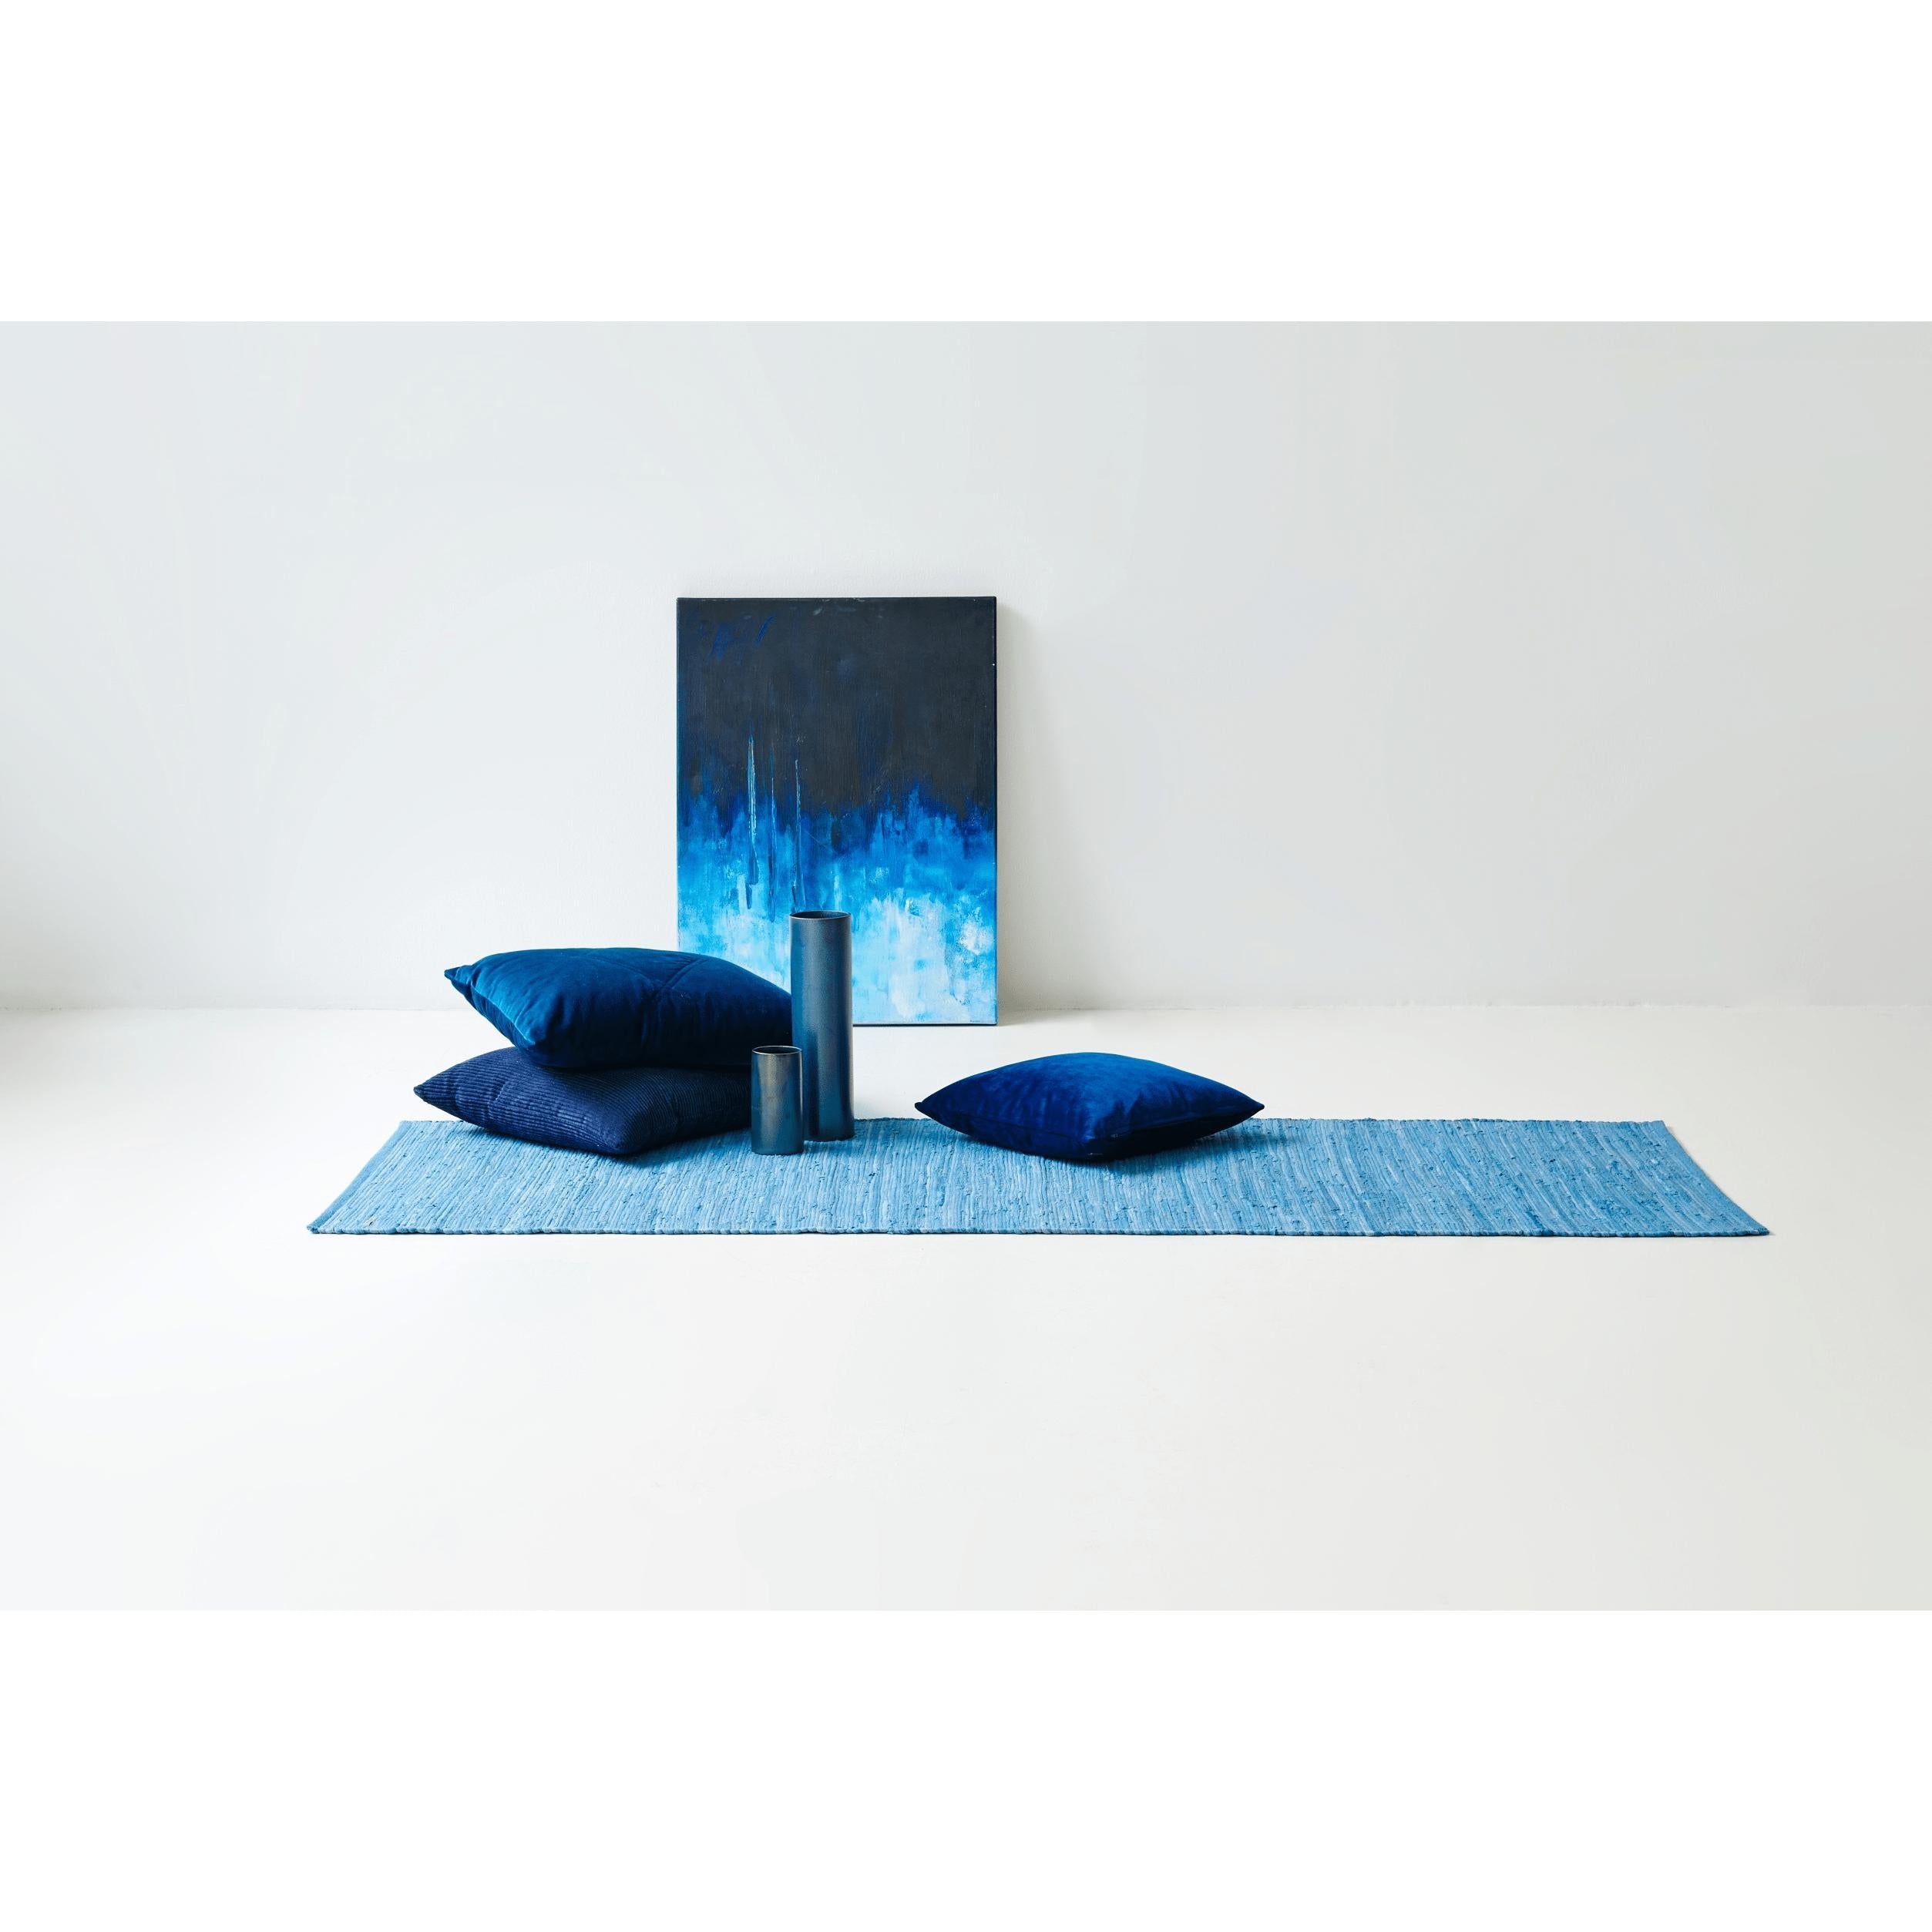 Rug Solid Katoenen Tapijt Eternity Blue, 75 x 200 cm